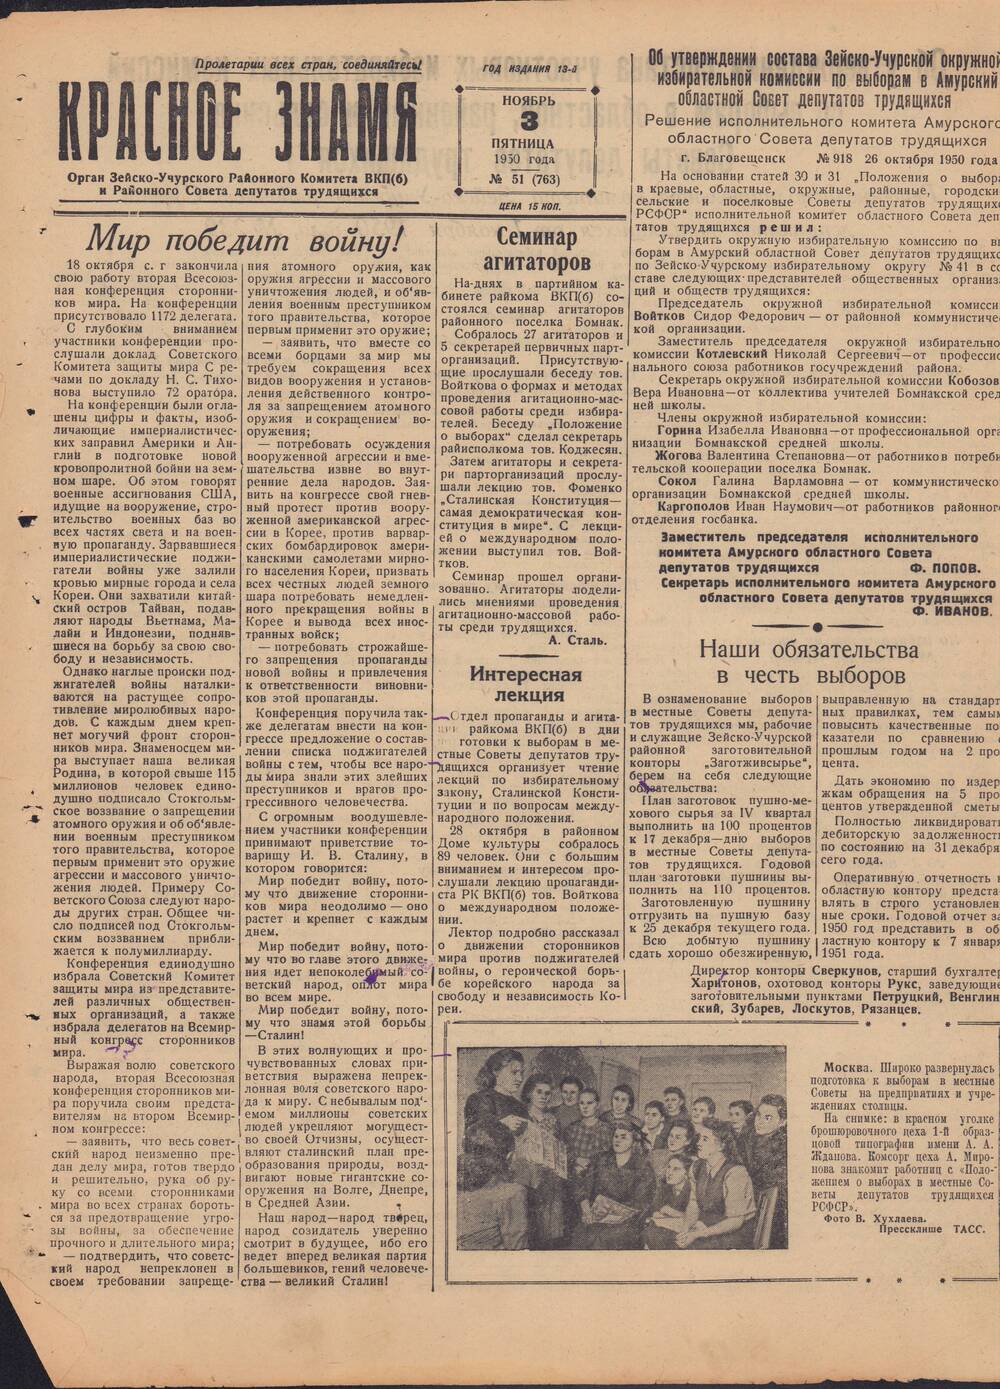 Газета Красное знамя №51 (763) от 3 ноября 1950 года.